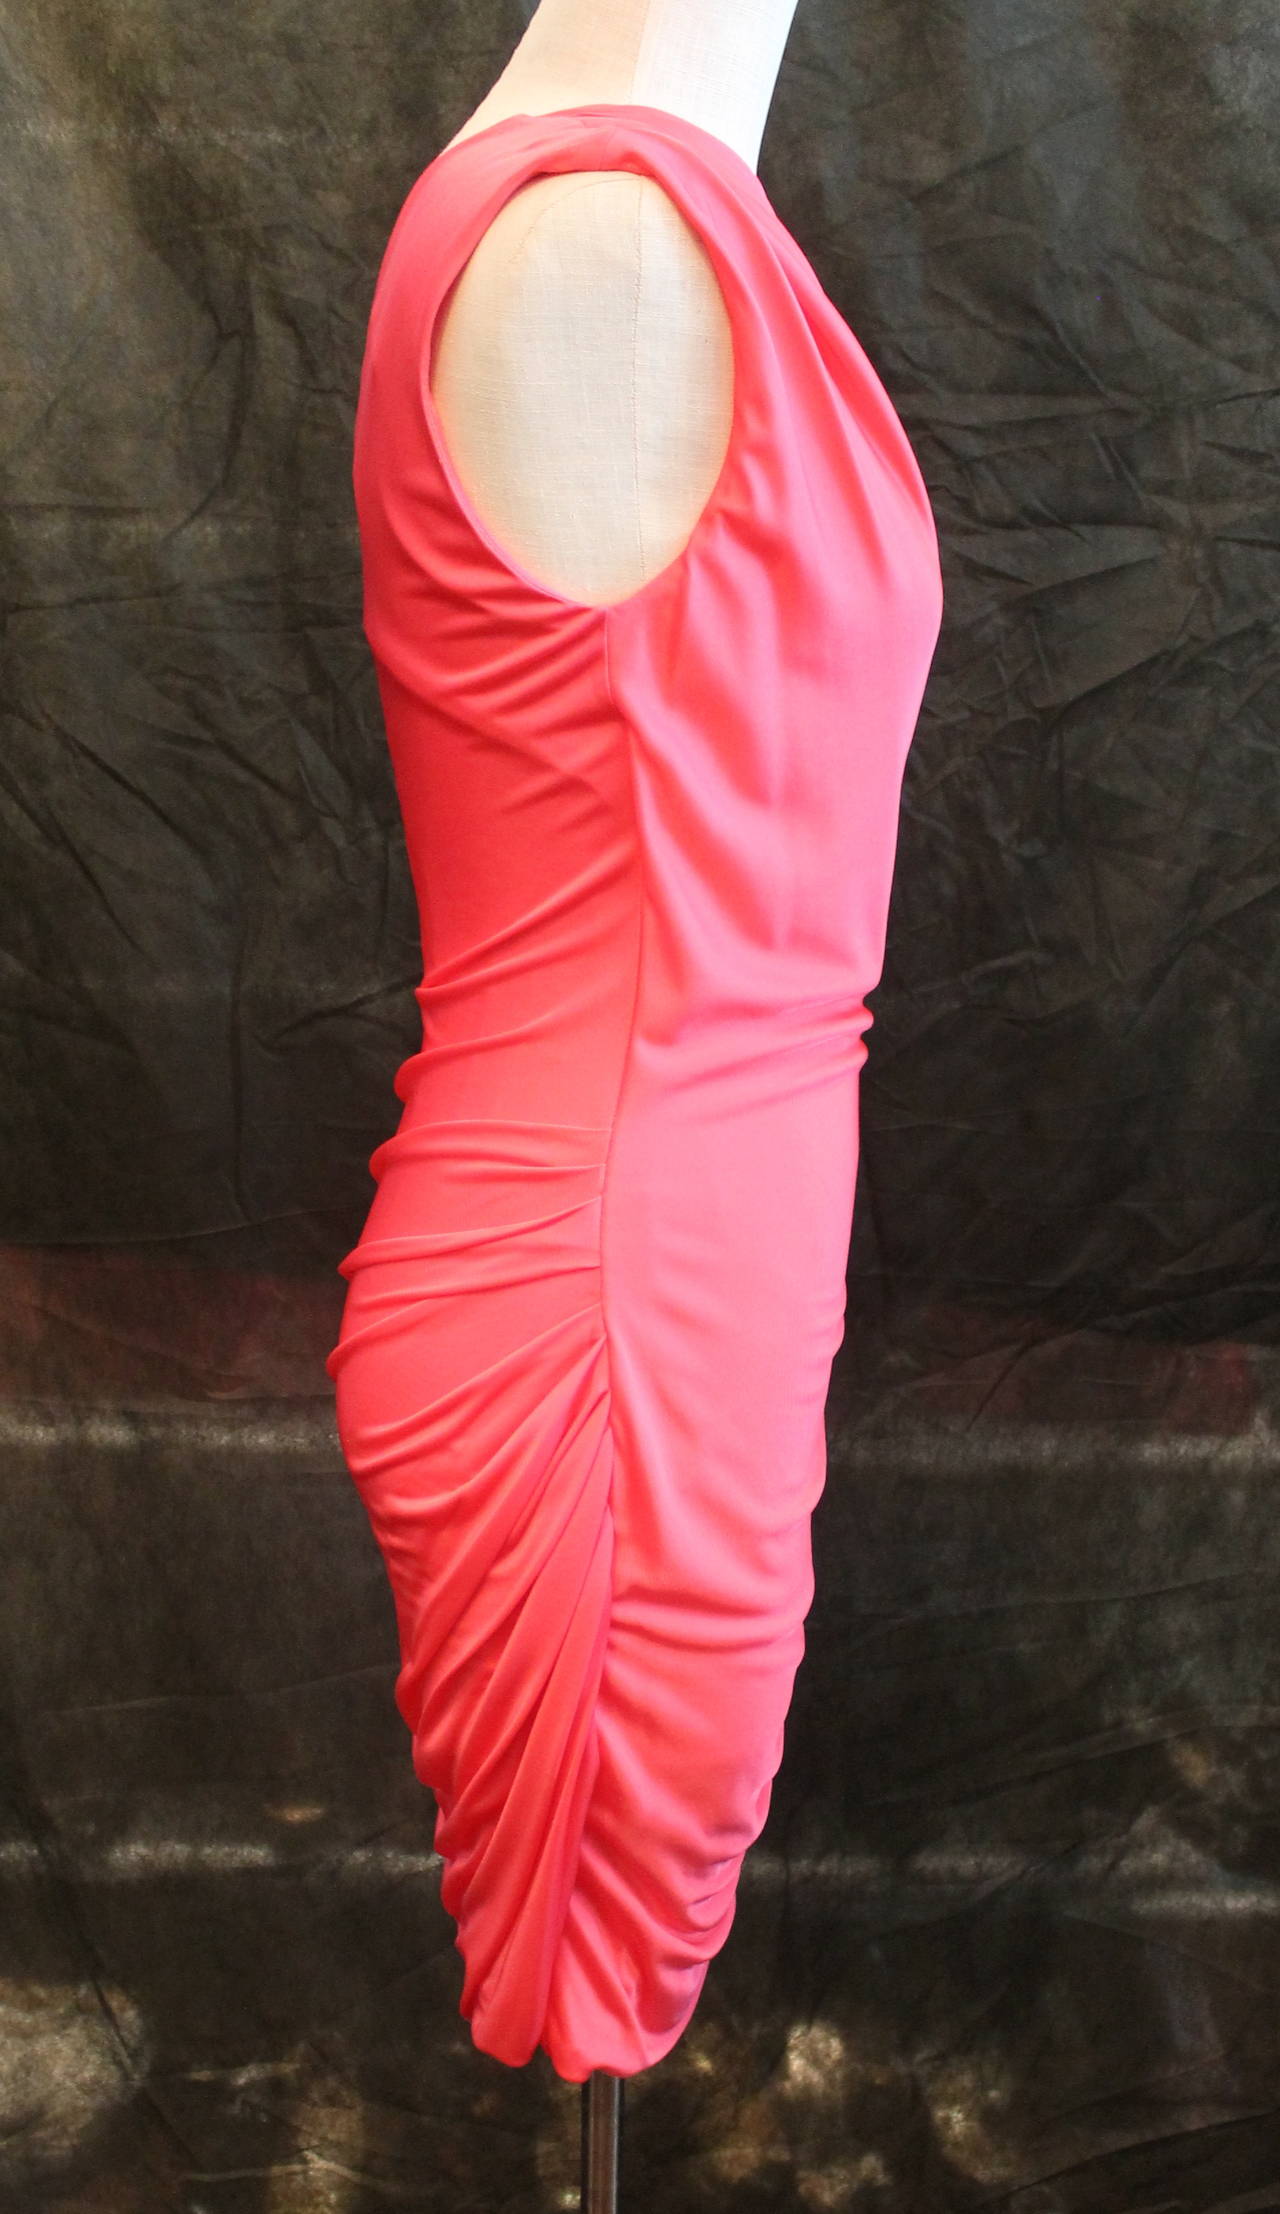 Emilio Pucci Rosa Ein-Schulter-Kleid aus Seidenjersey. Dieses Kleid ist eine Größe 8, aber dehnt sich ein wenig. Es ist in sehr gutem Zustand.

Messungen
Büste- 30